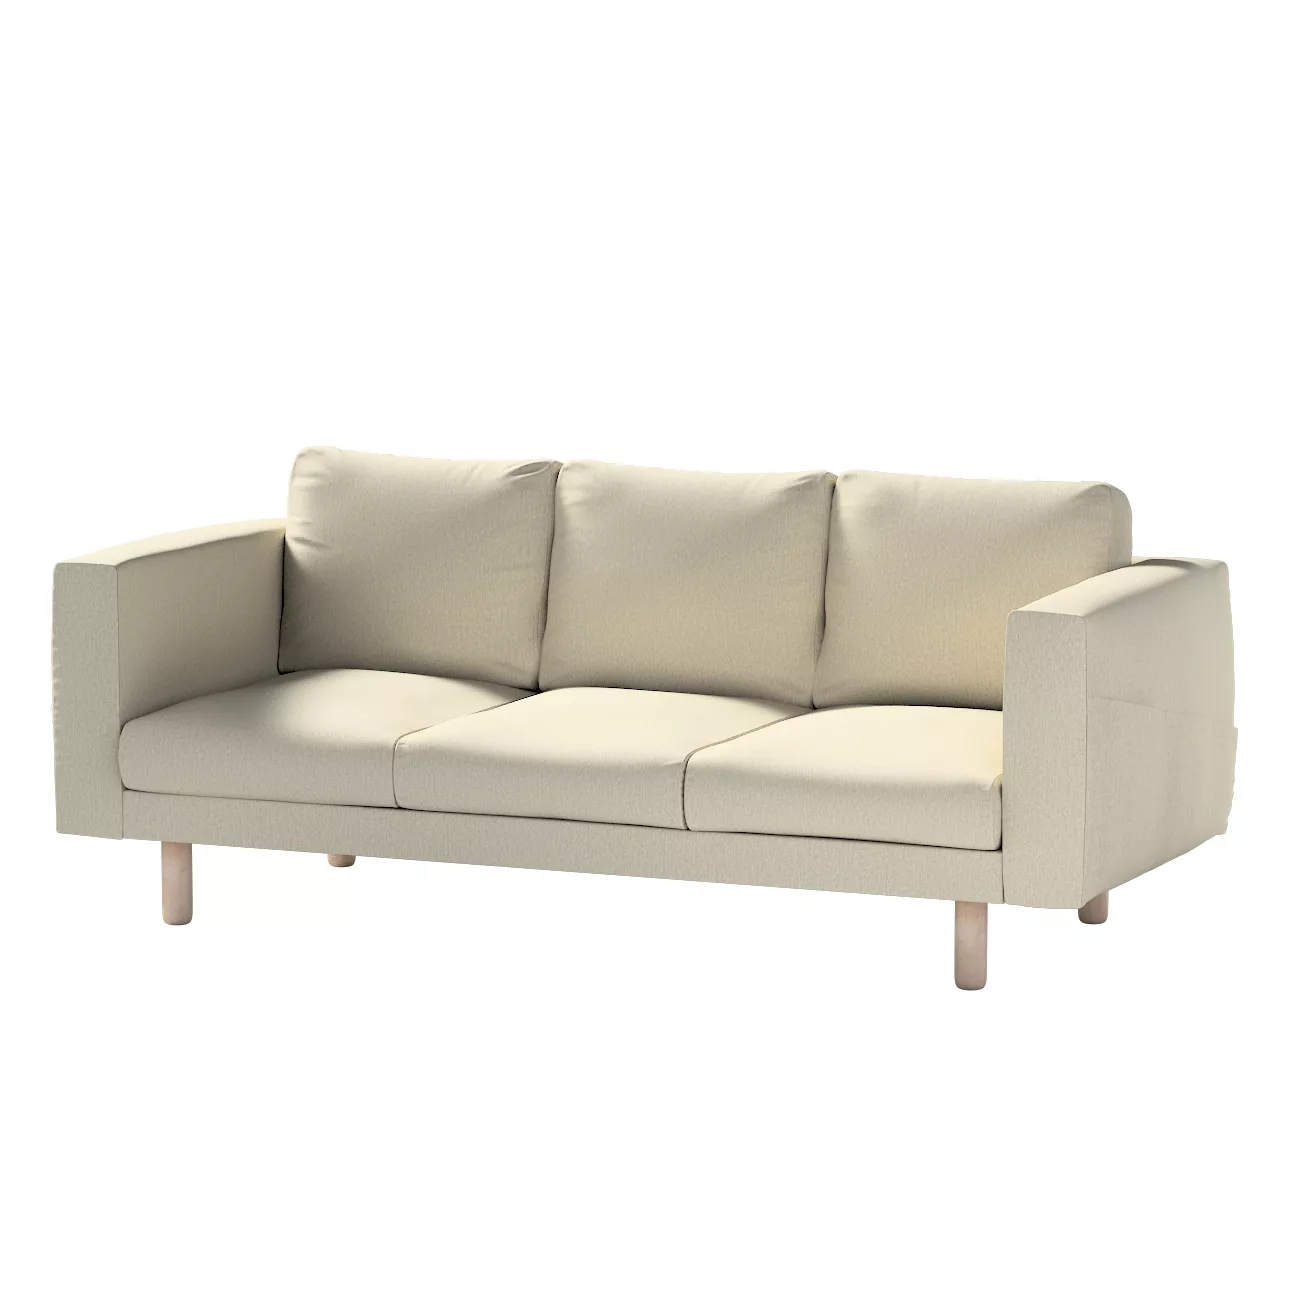 Bezug für Norsborg 3-Sitzer Sofa, beige-grau, Norsborg 3-Sitzer Sofabezug, günstig online kaufen